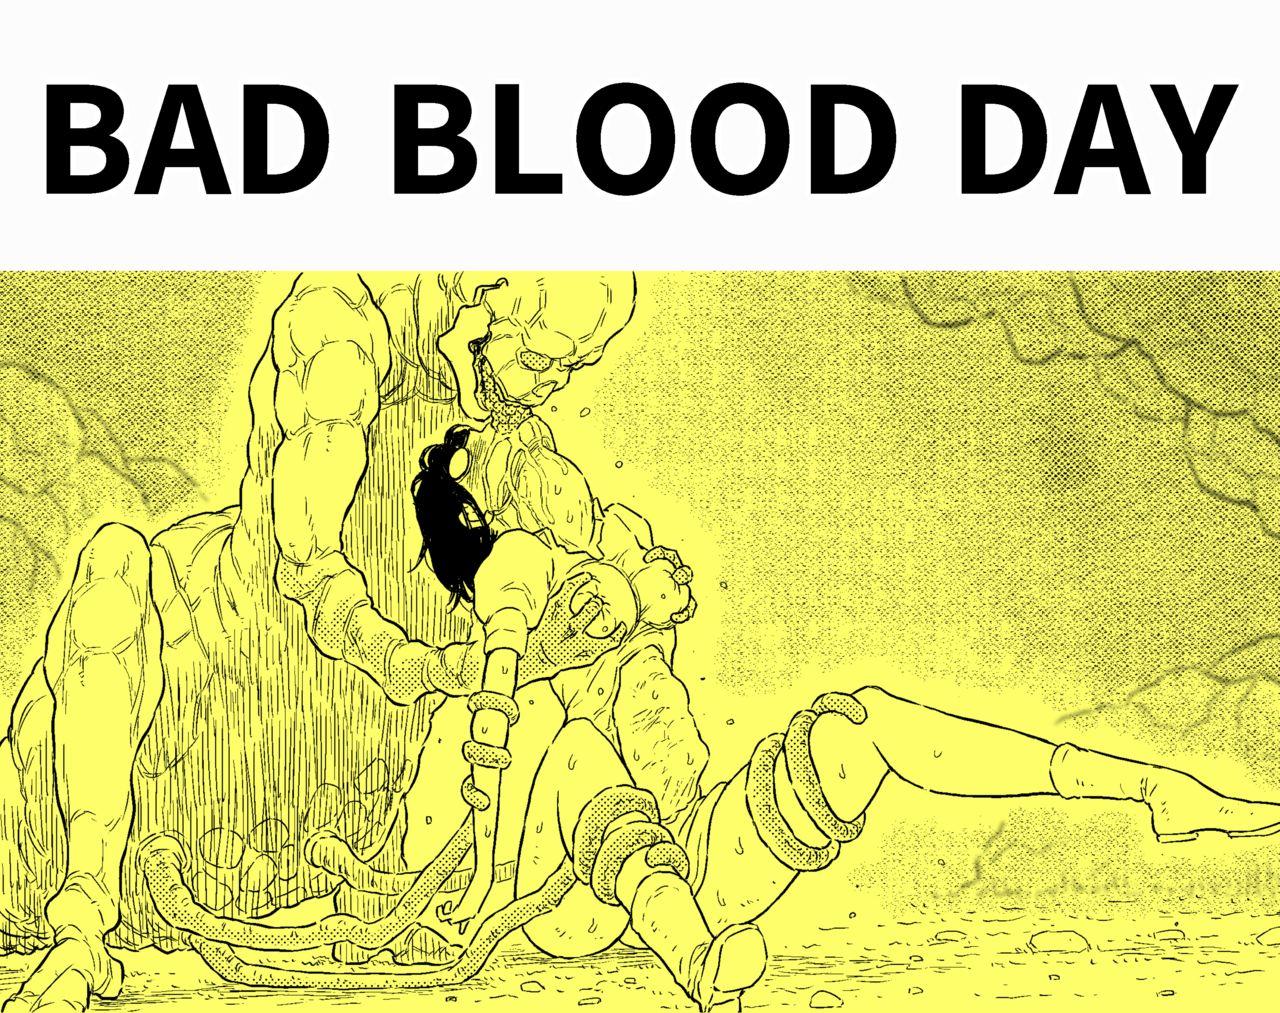 BAD BLOOD DAY『蠢く触手と壊されるヒロインの体』 1